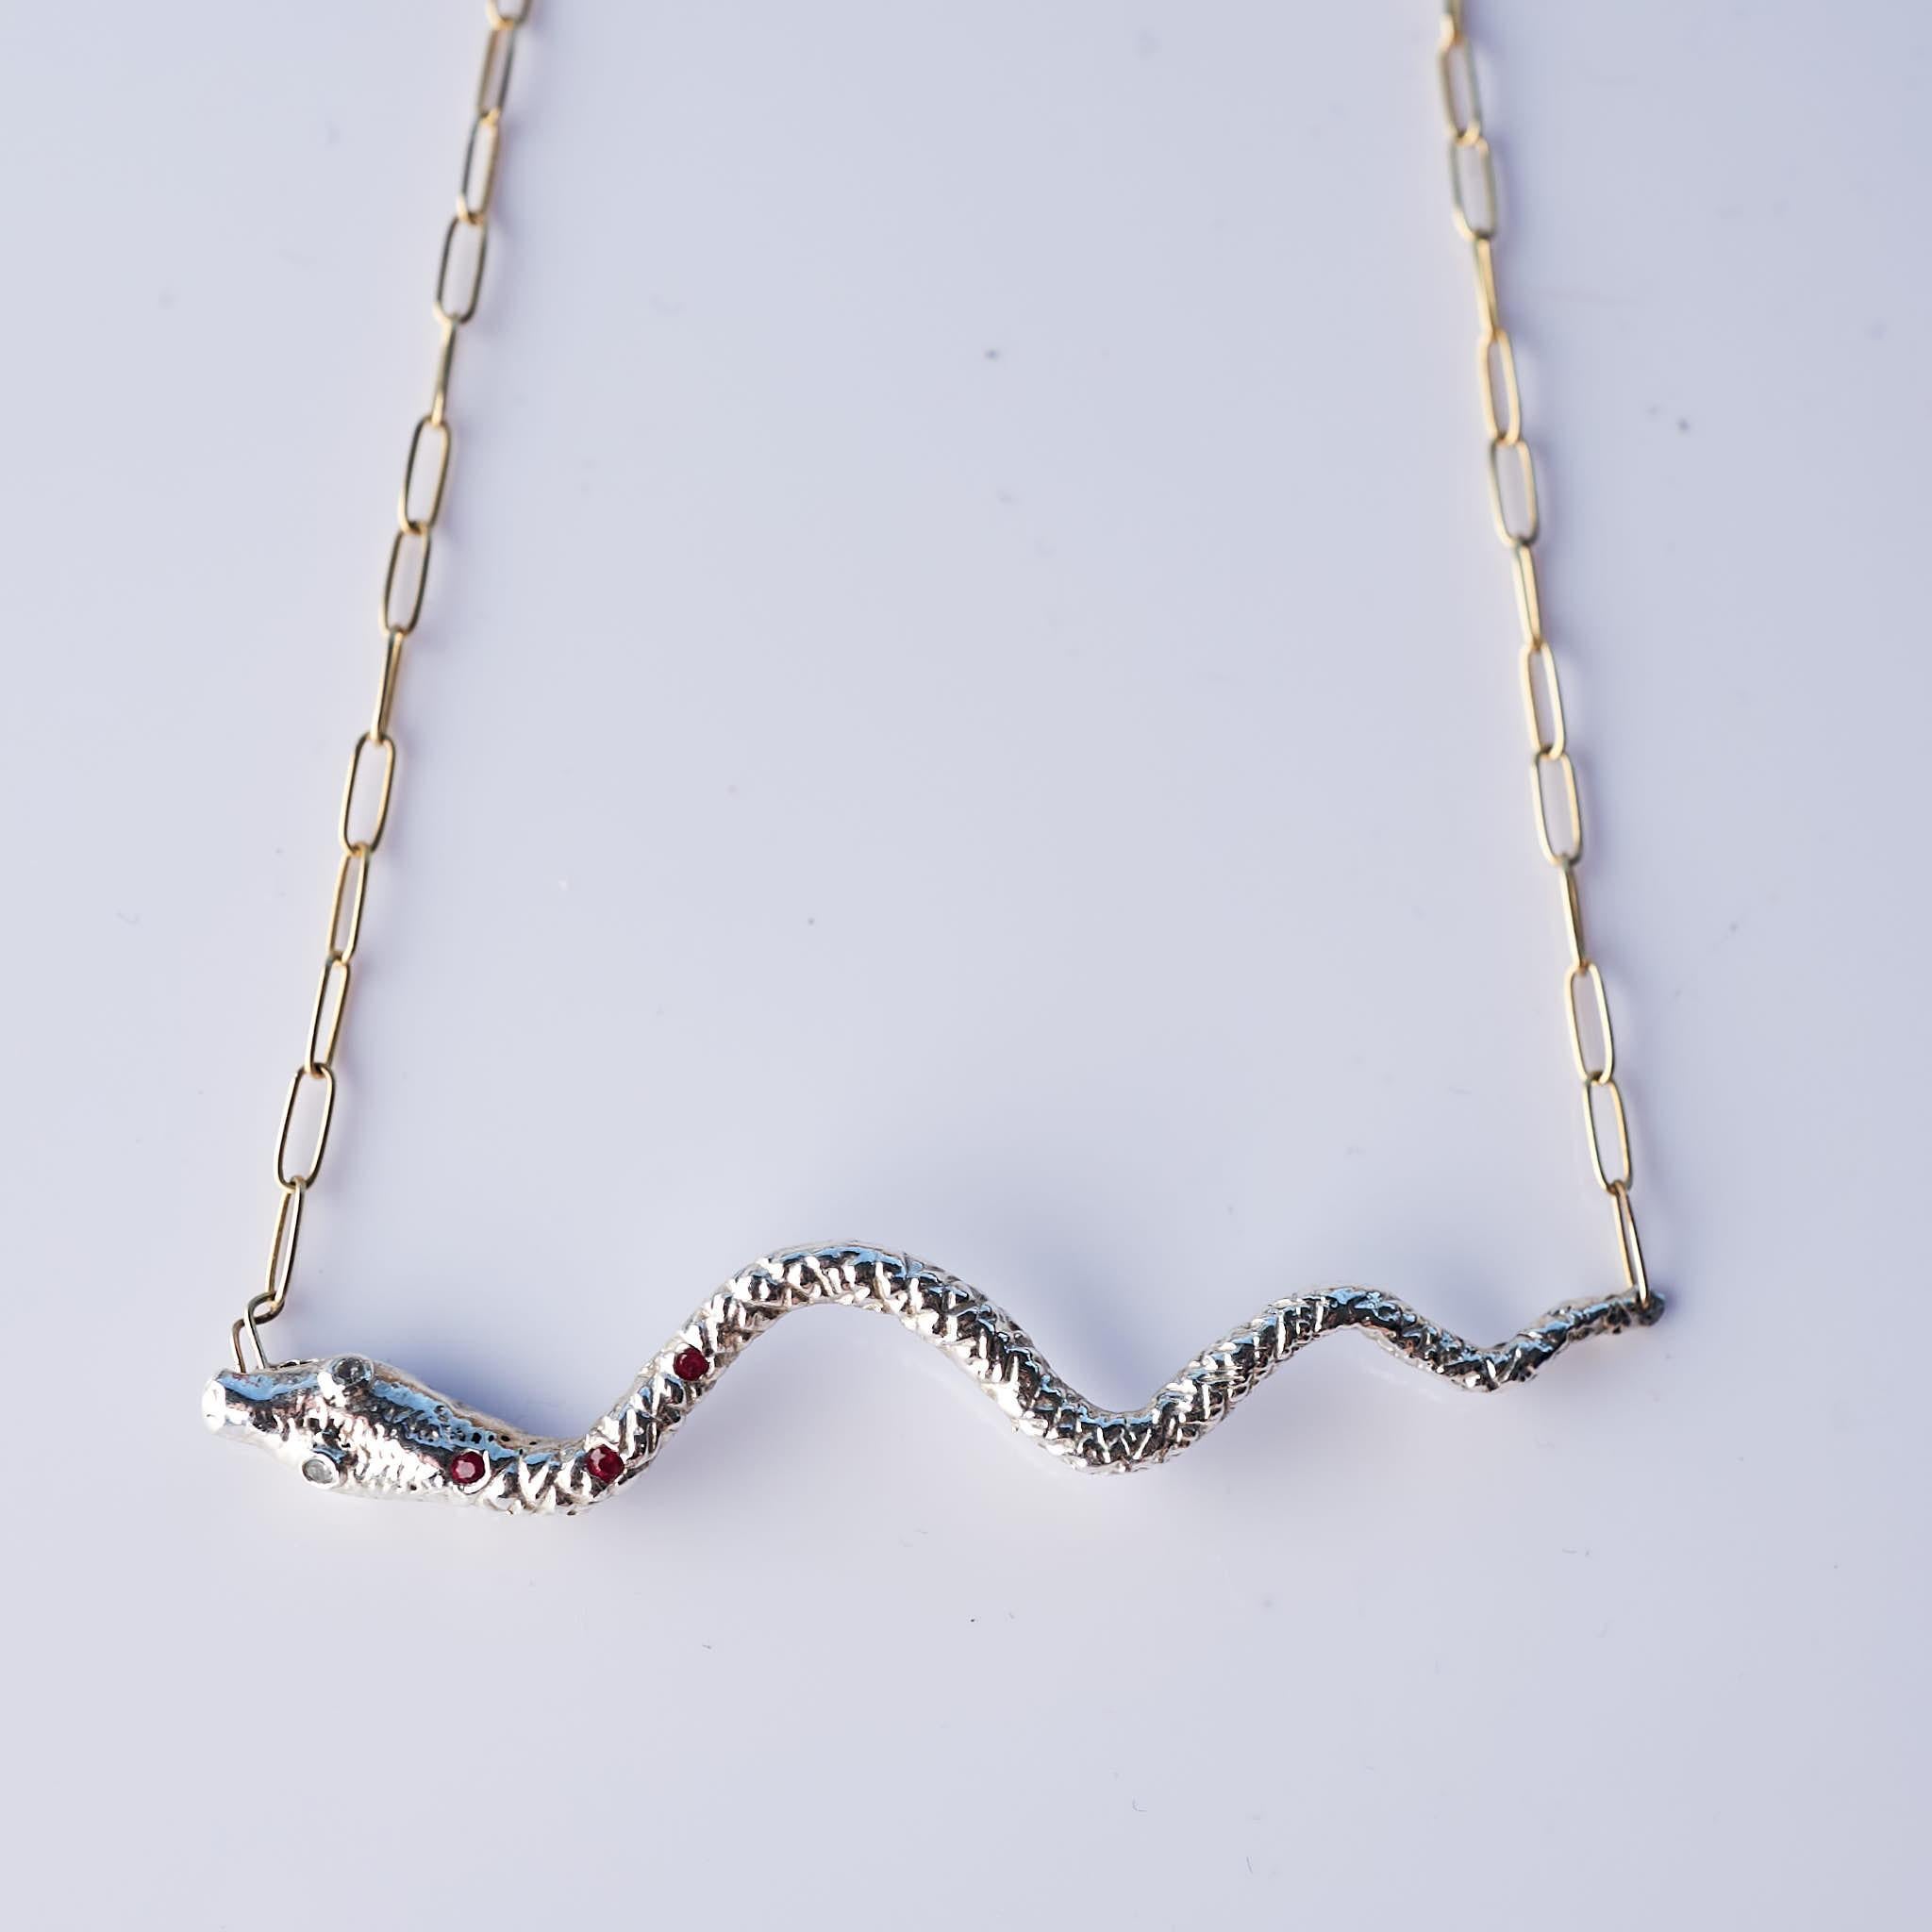 Rubin Aquamarin Schlange Halskette Choker Kette Silber J Dauphin

Kann als Halsband oder Anhänger getragen werden - Kette ist verstellbar - erhältlich als 20 Zoll, kann aber auch in jeder kürzeren Größe getragen werden.

J DAUPHIN Halskette mit